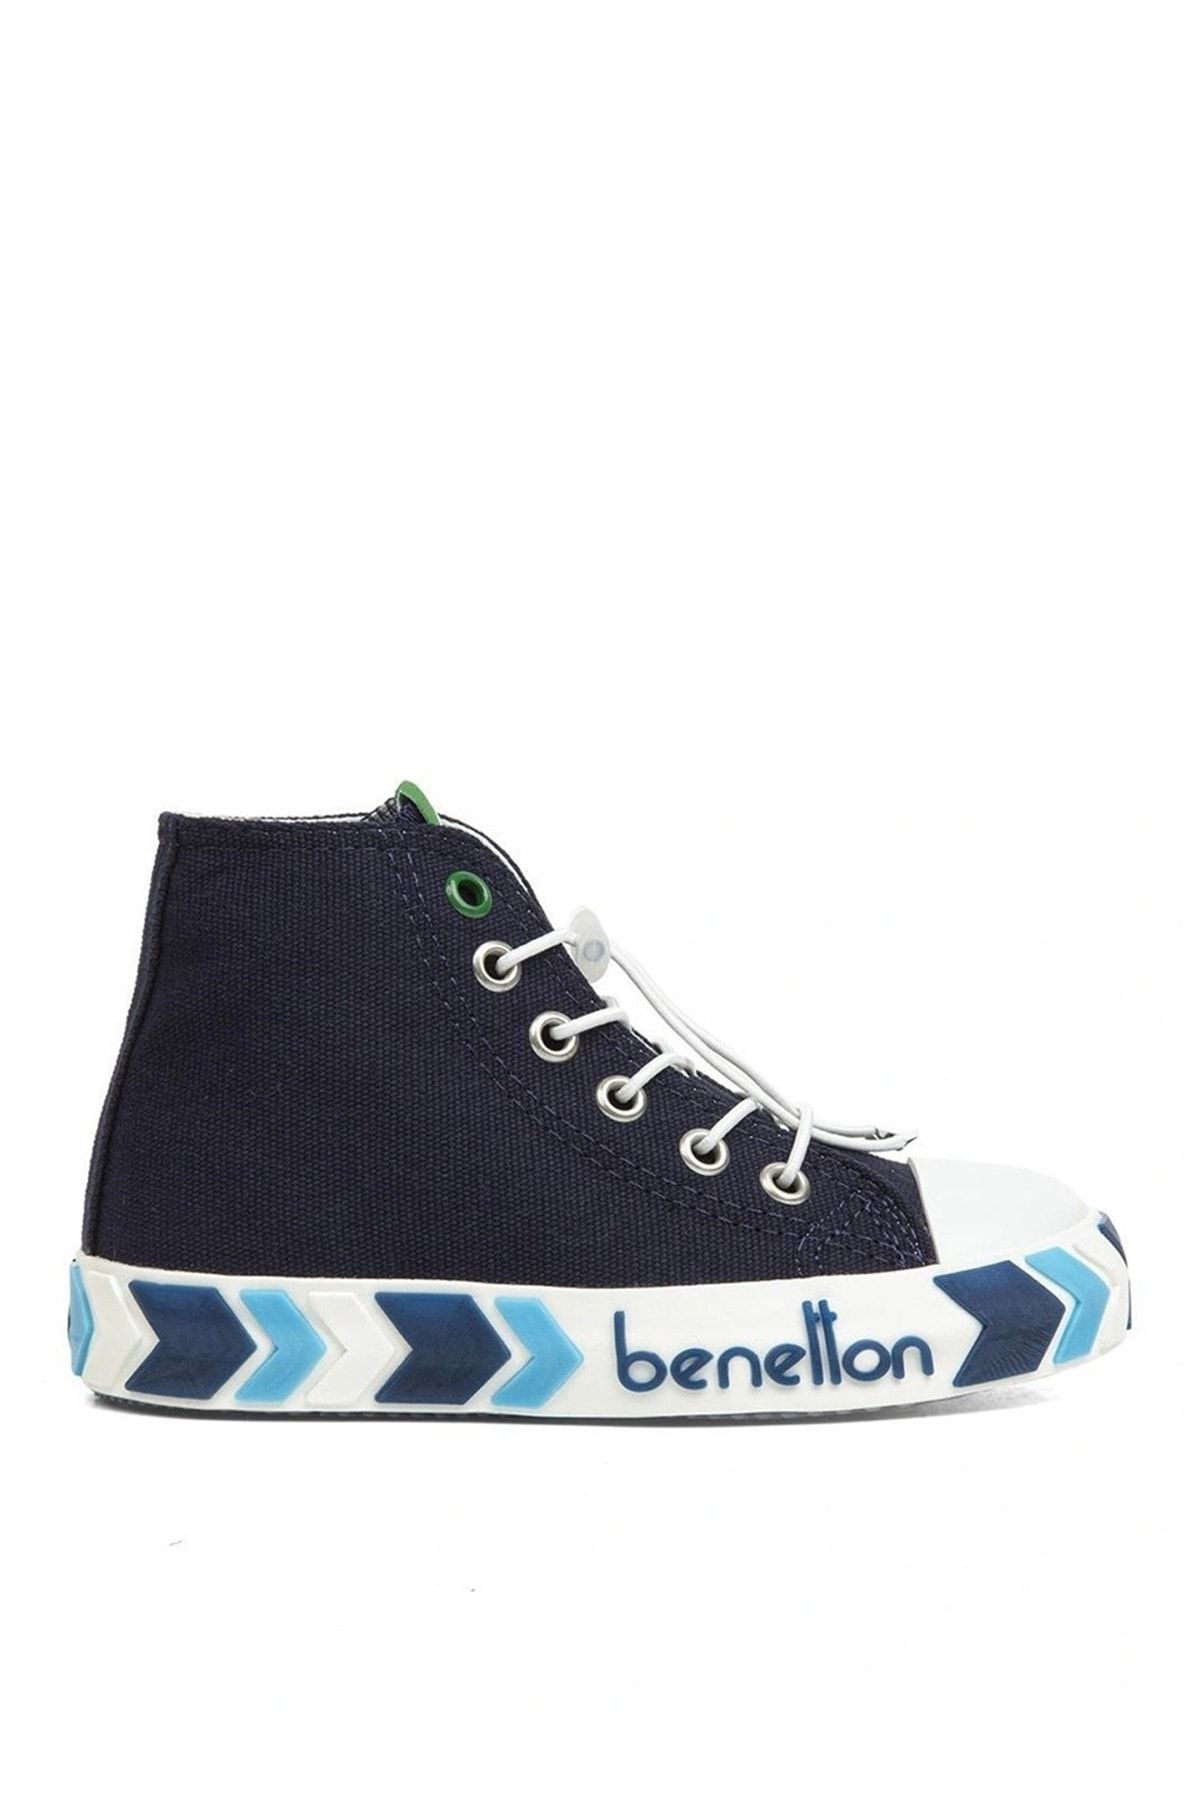 Benetton Koyu Lacivert Erkek Çocuk Sneaker BN-30647